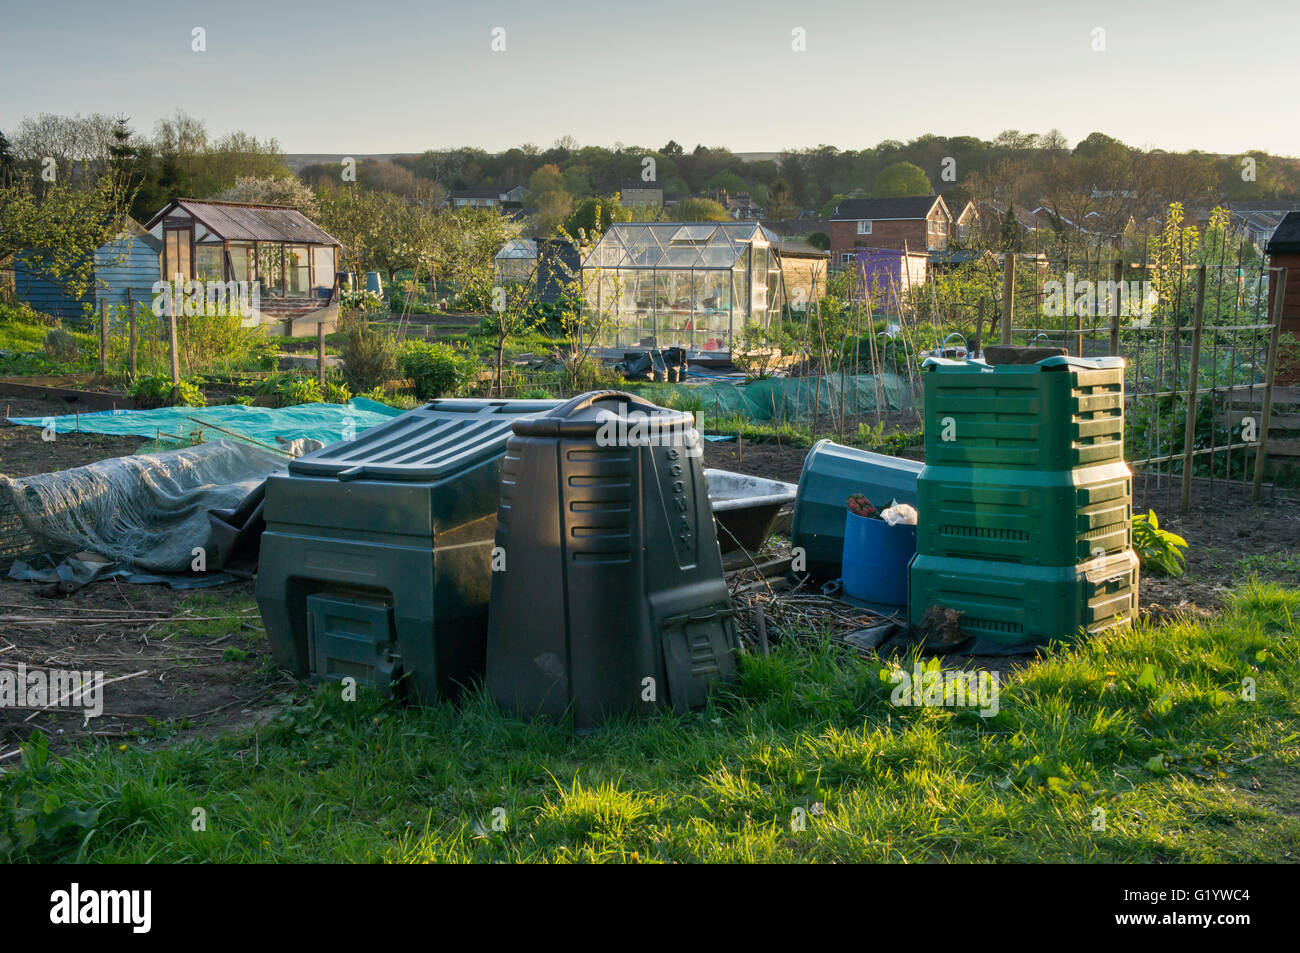 Burley in Wharfedale, West Yorkshire, England - Kontingente mit Kompost-Behälter (verschiedene Größen und Formen) und Gewächshäusern. Stockfoto